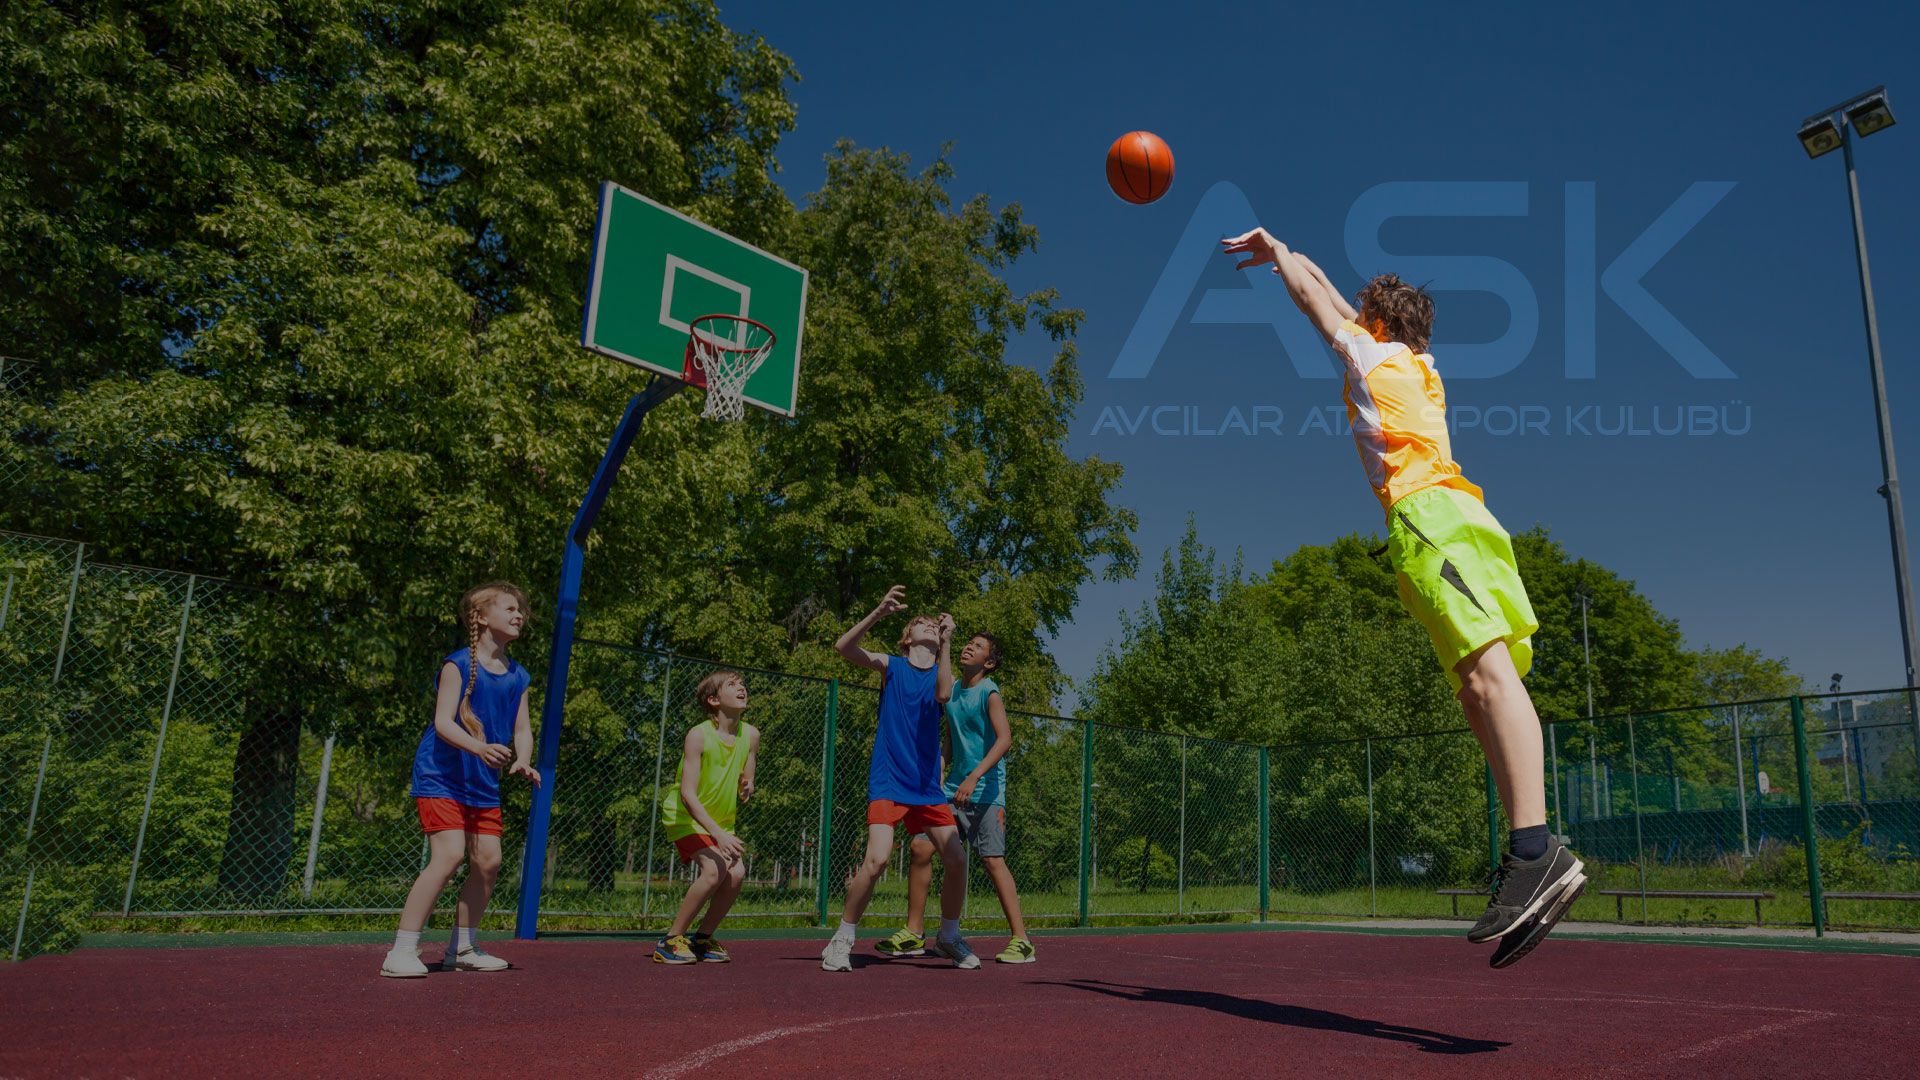 Basketbol Kursu (Fiyatları) - Bahçekent Spor Kulubü